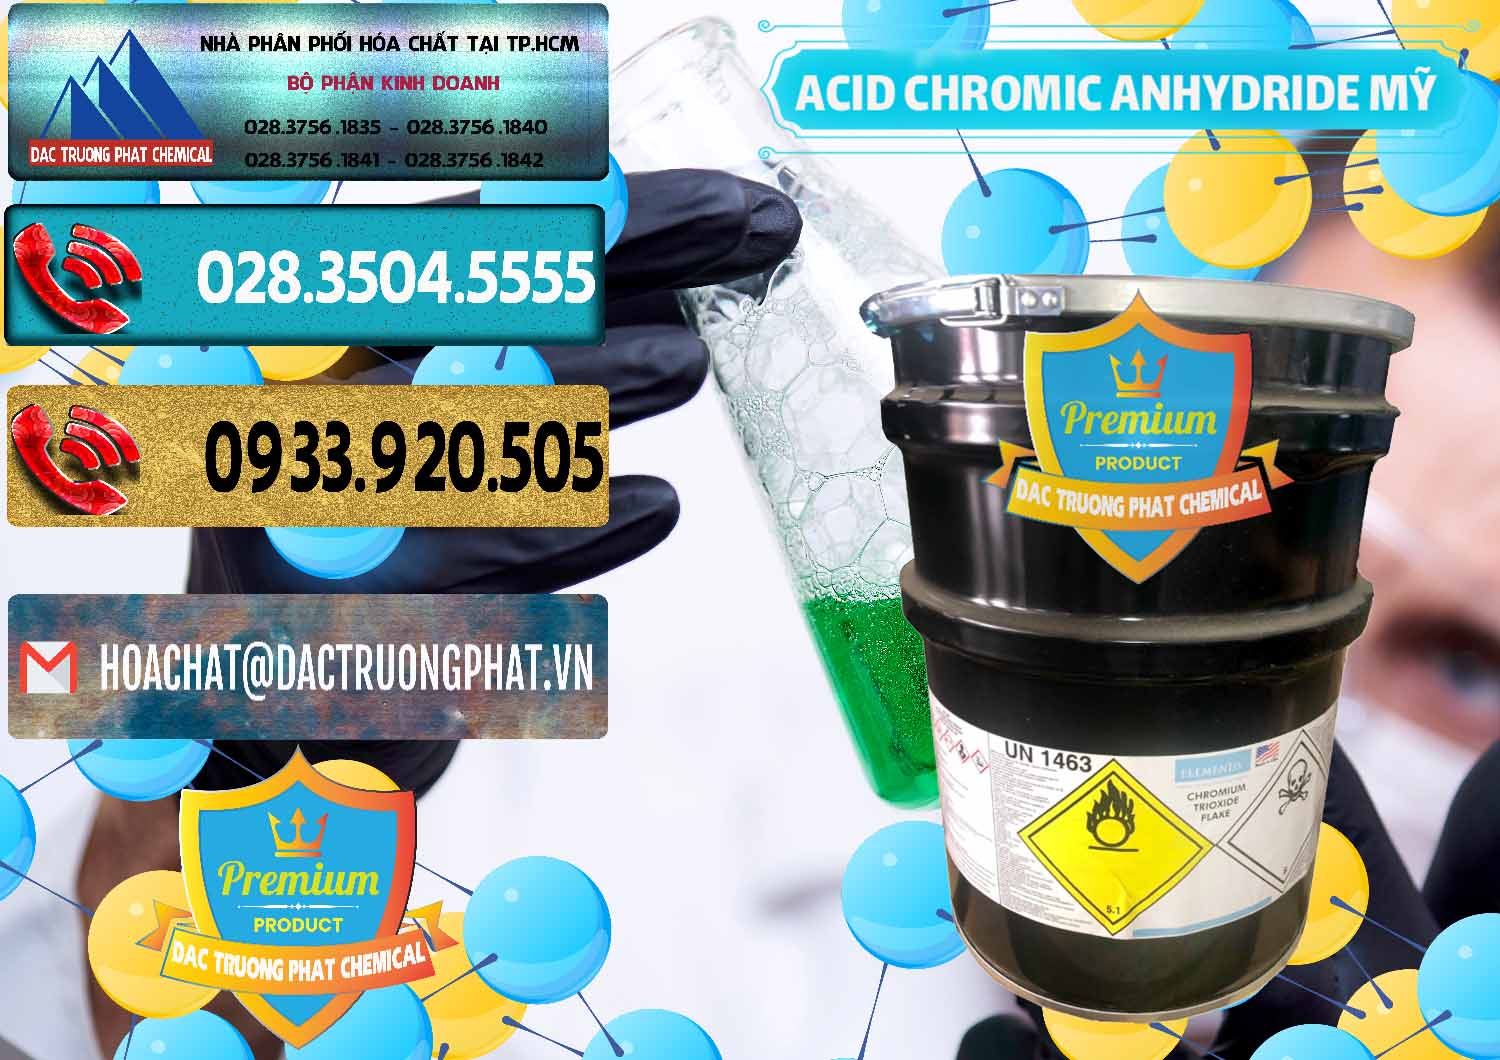 Công ty chuyên phân phối và bán Acid Chromic Anhydride - Cromic CRO3 USA Mỹ - 0364 - Công ty chuyên bán & cung cấp hóa chất tại TP.HCM - hoachatdetnhuom.com